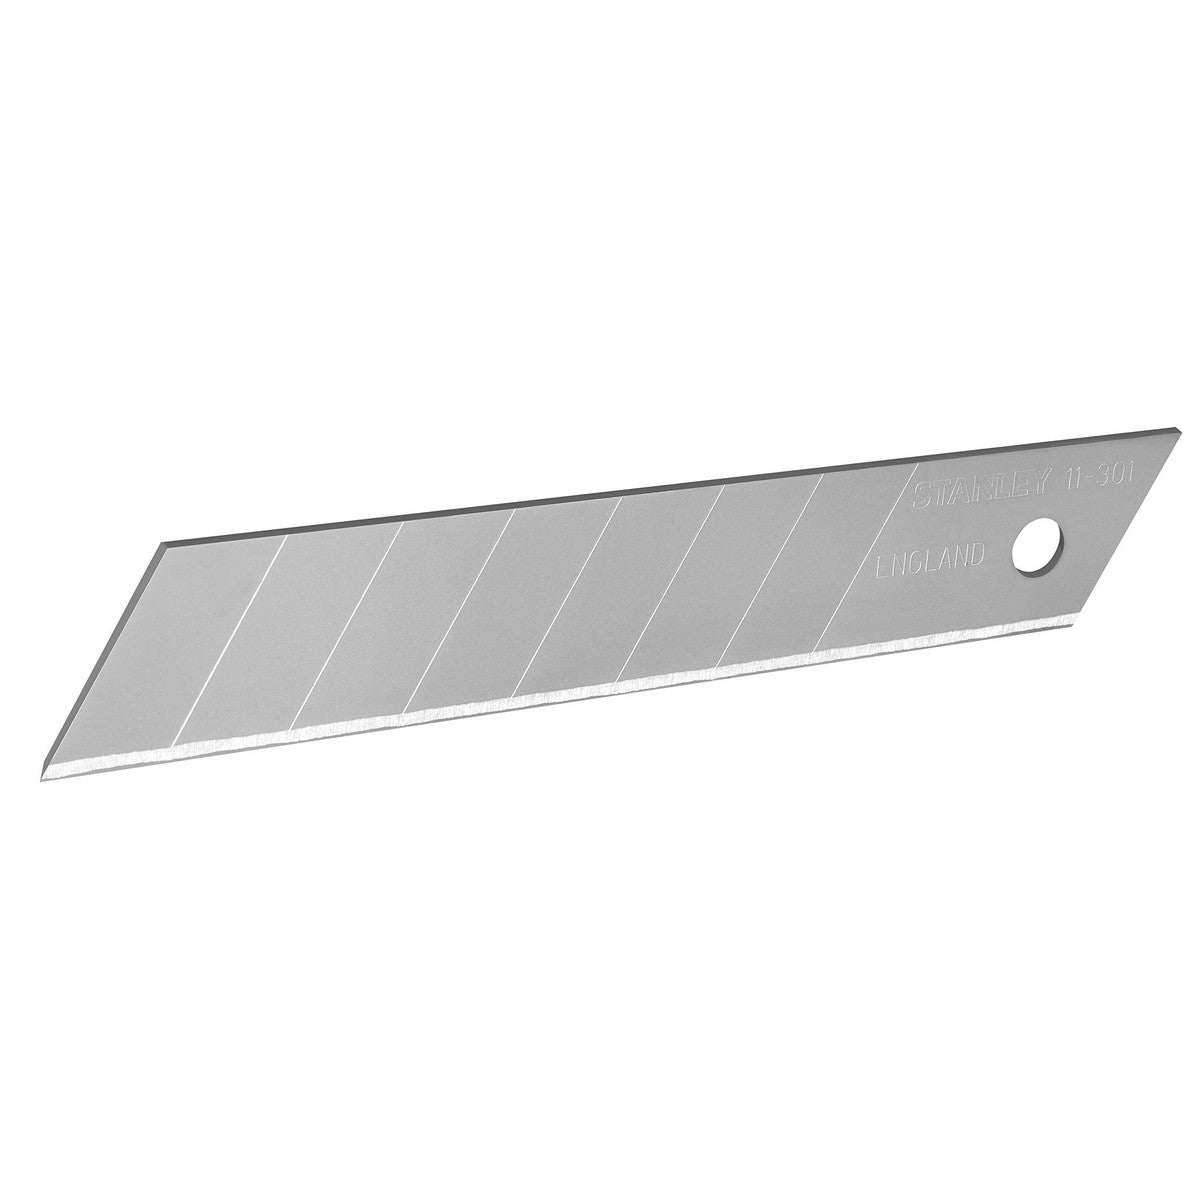 Klinge für Cuttermesser Stanley 0-11-301 Schwarz 18 mm (10 Stück)